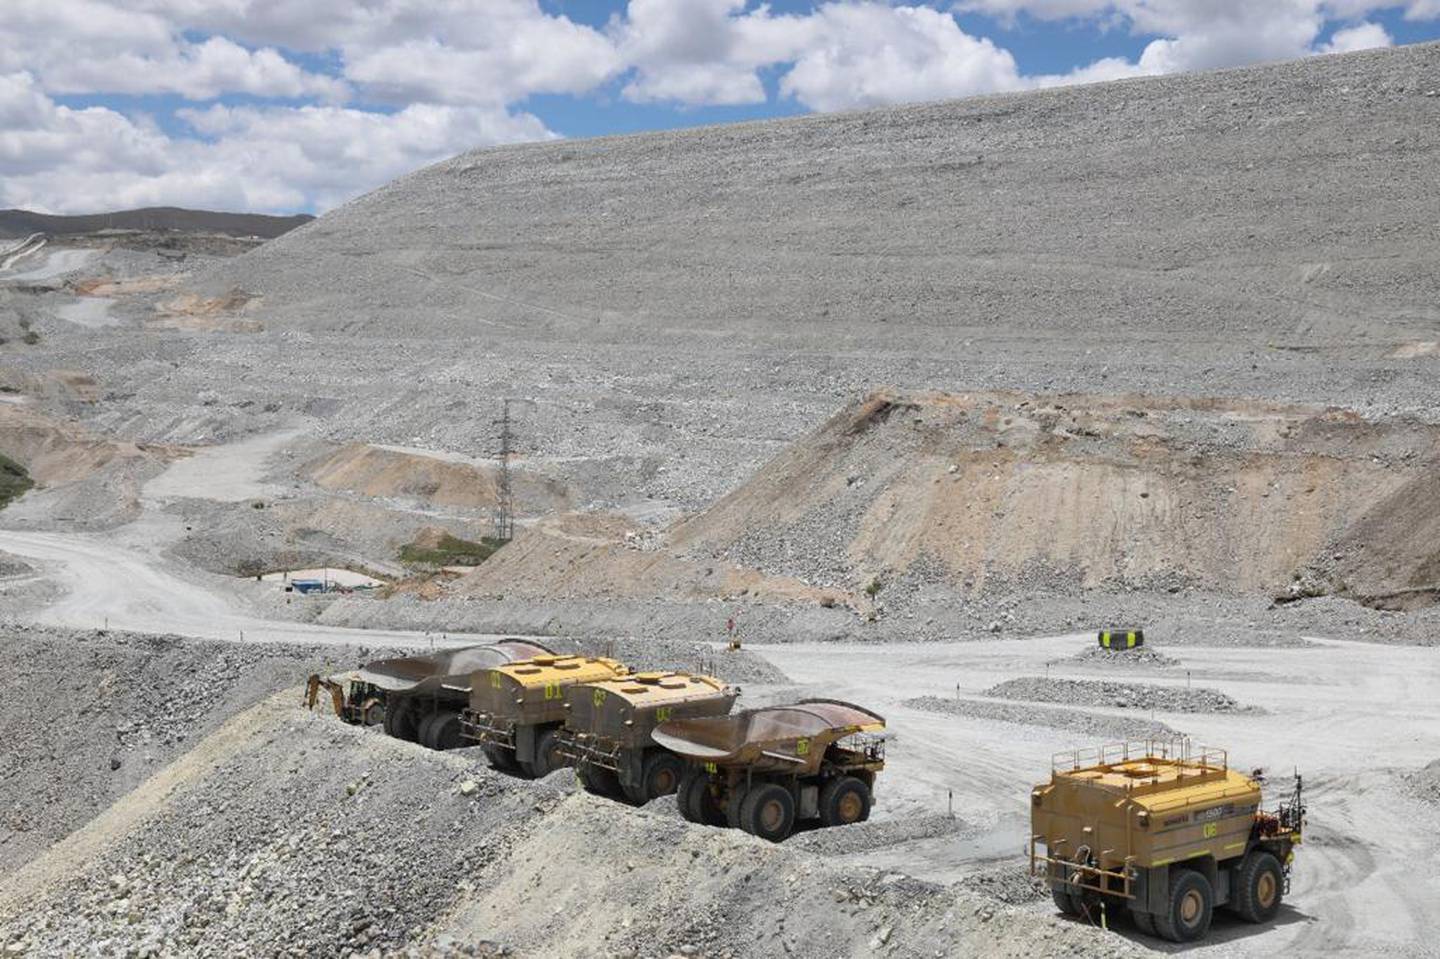 La mina tiene capacidad para producir casi 400.000 toneladas métricas de cobre al año.dfd